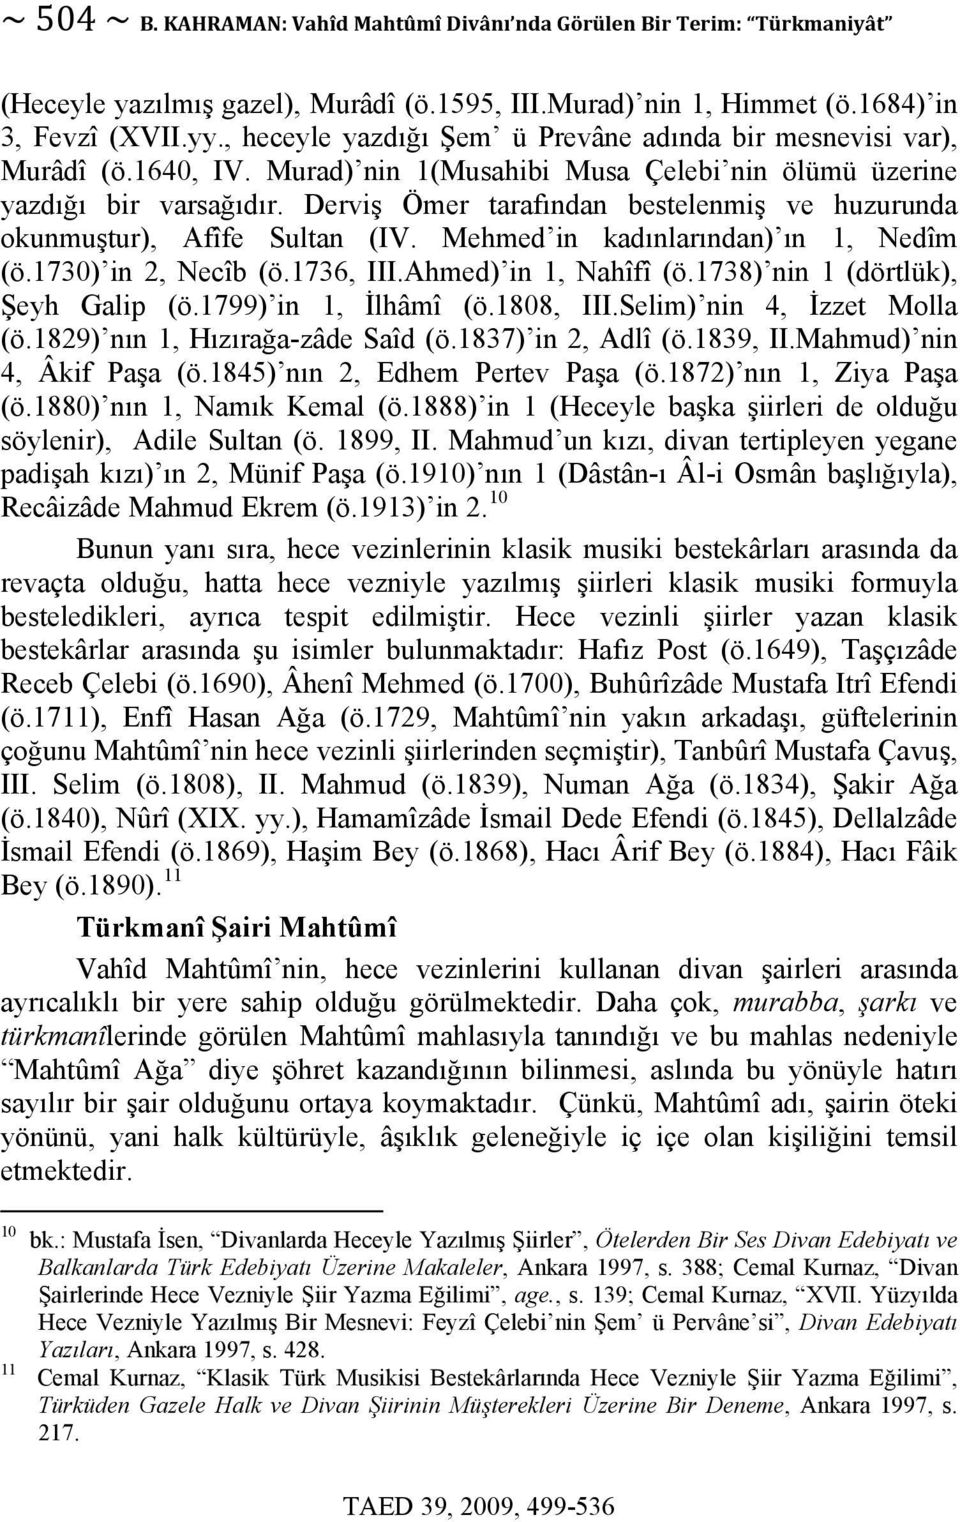 Derviş Ömer tarafından bestelenmiş ve huzurunda okunmuştur), Afîfe Sultan (IV. Mehmed in kadınlarından) ın 1, Nedîm (ö.1730) in 2, Necîb (ö.1736, III.Ahmed) in 1, Nahîfî (ö.